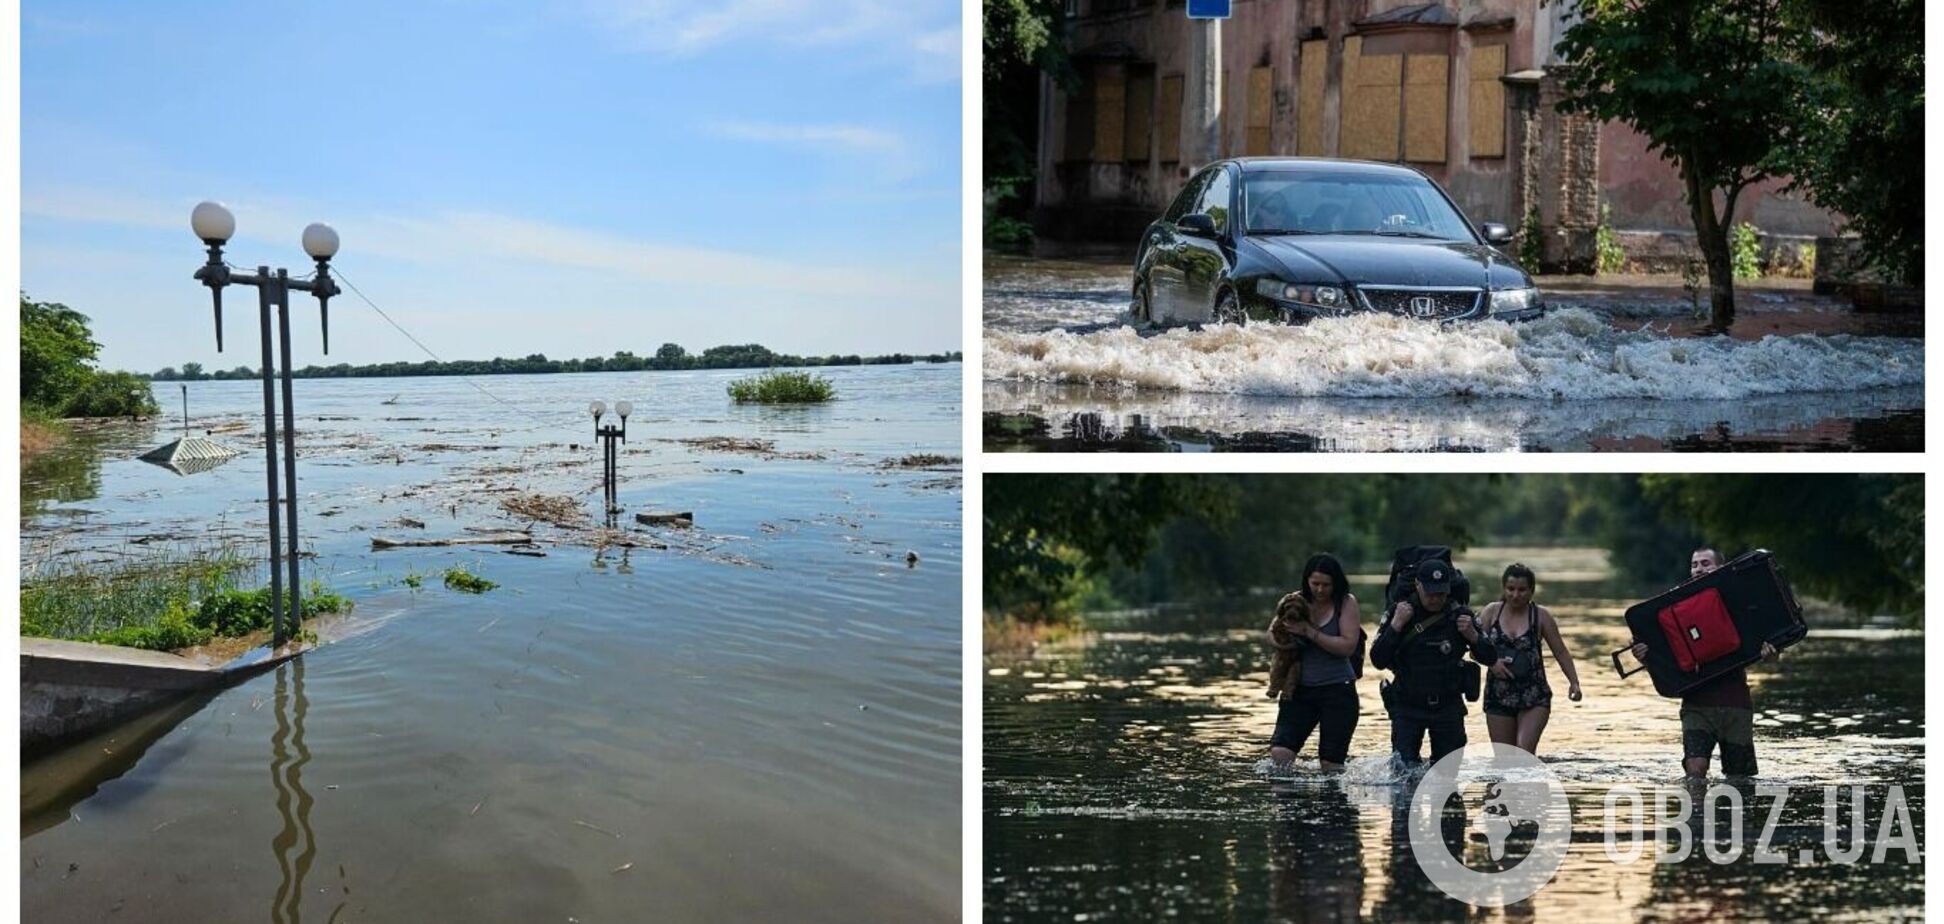 Алешки затоплены на 90%, в Голой Пристани уровень воды достигает более трех метров: люди оказались в ловушке (обновляется)